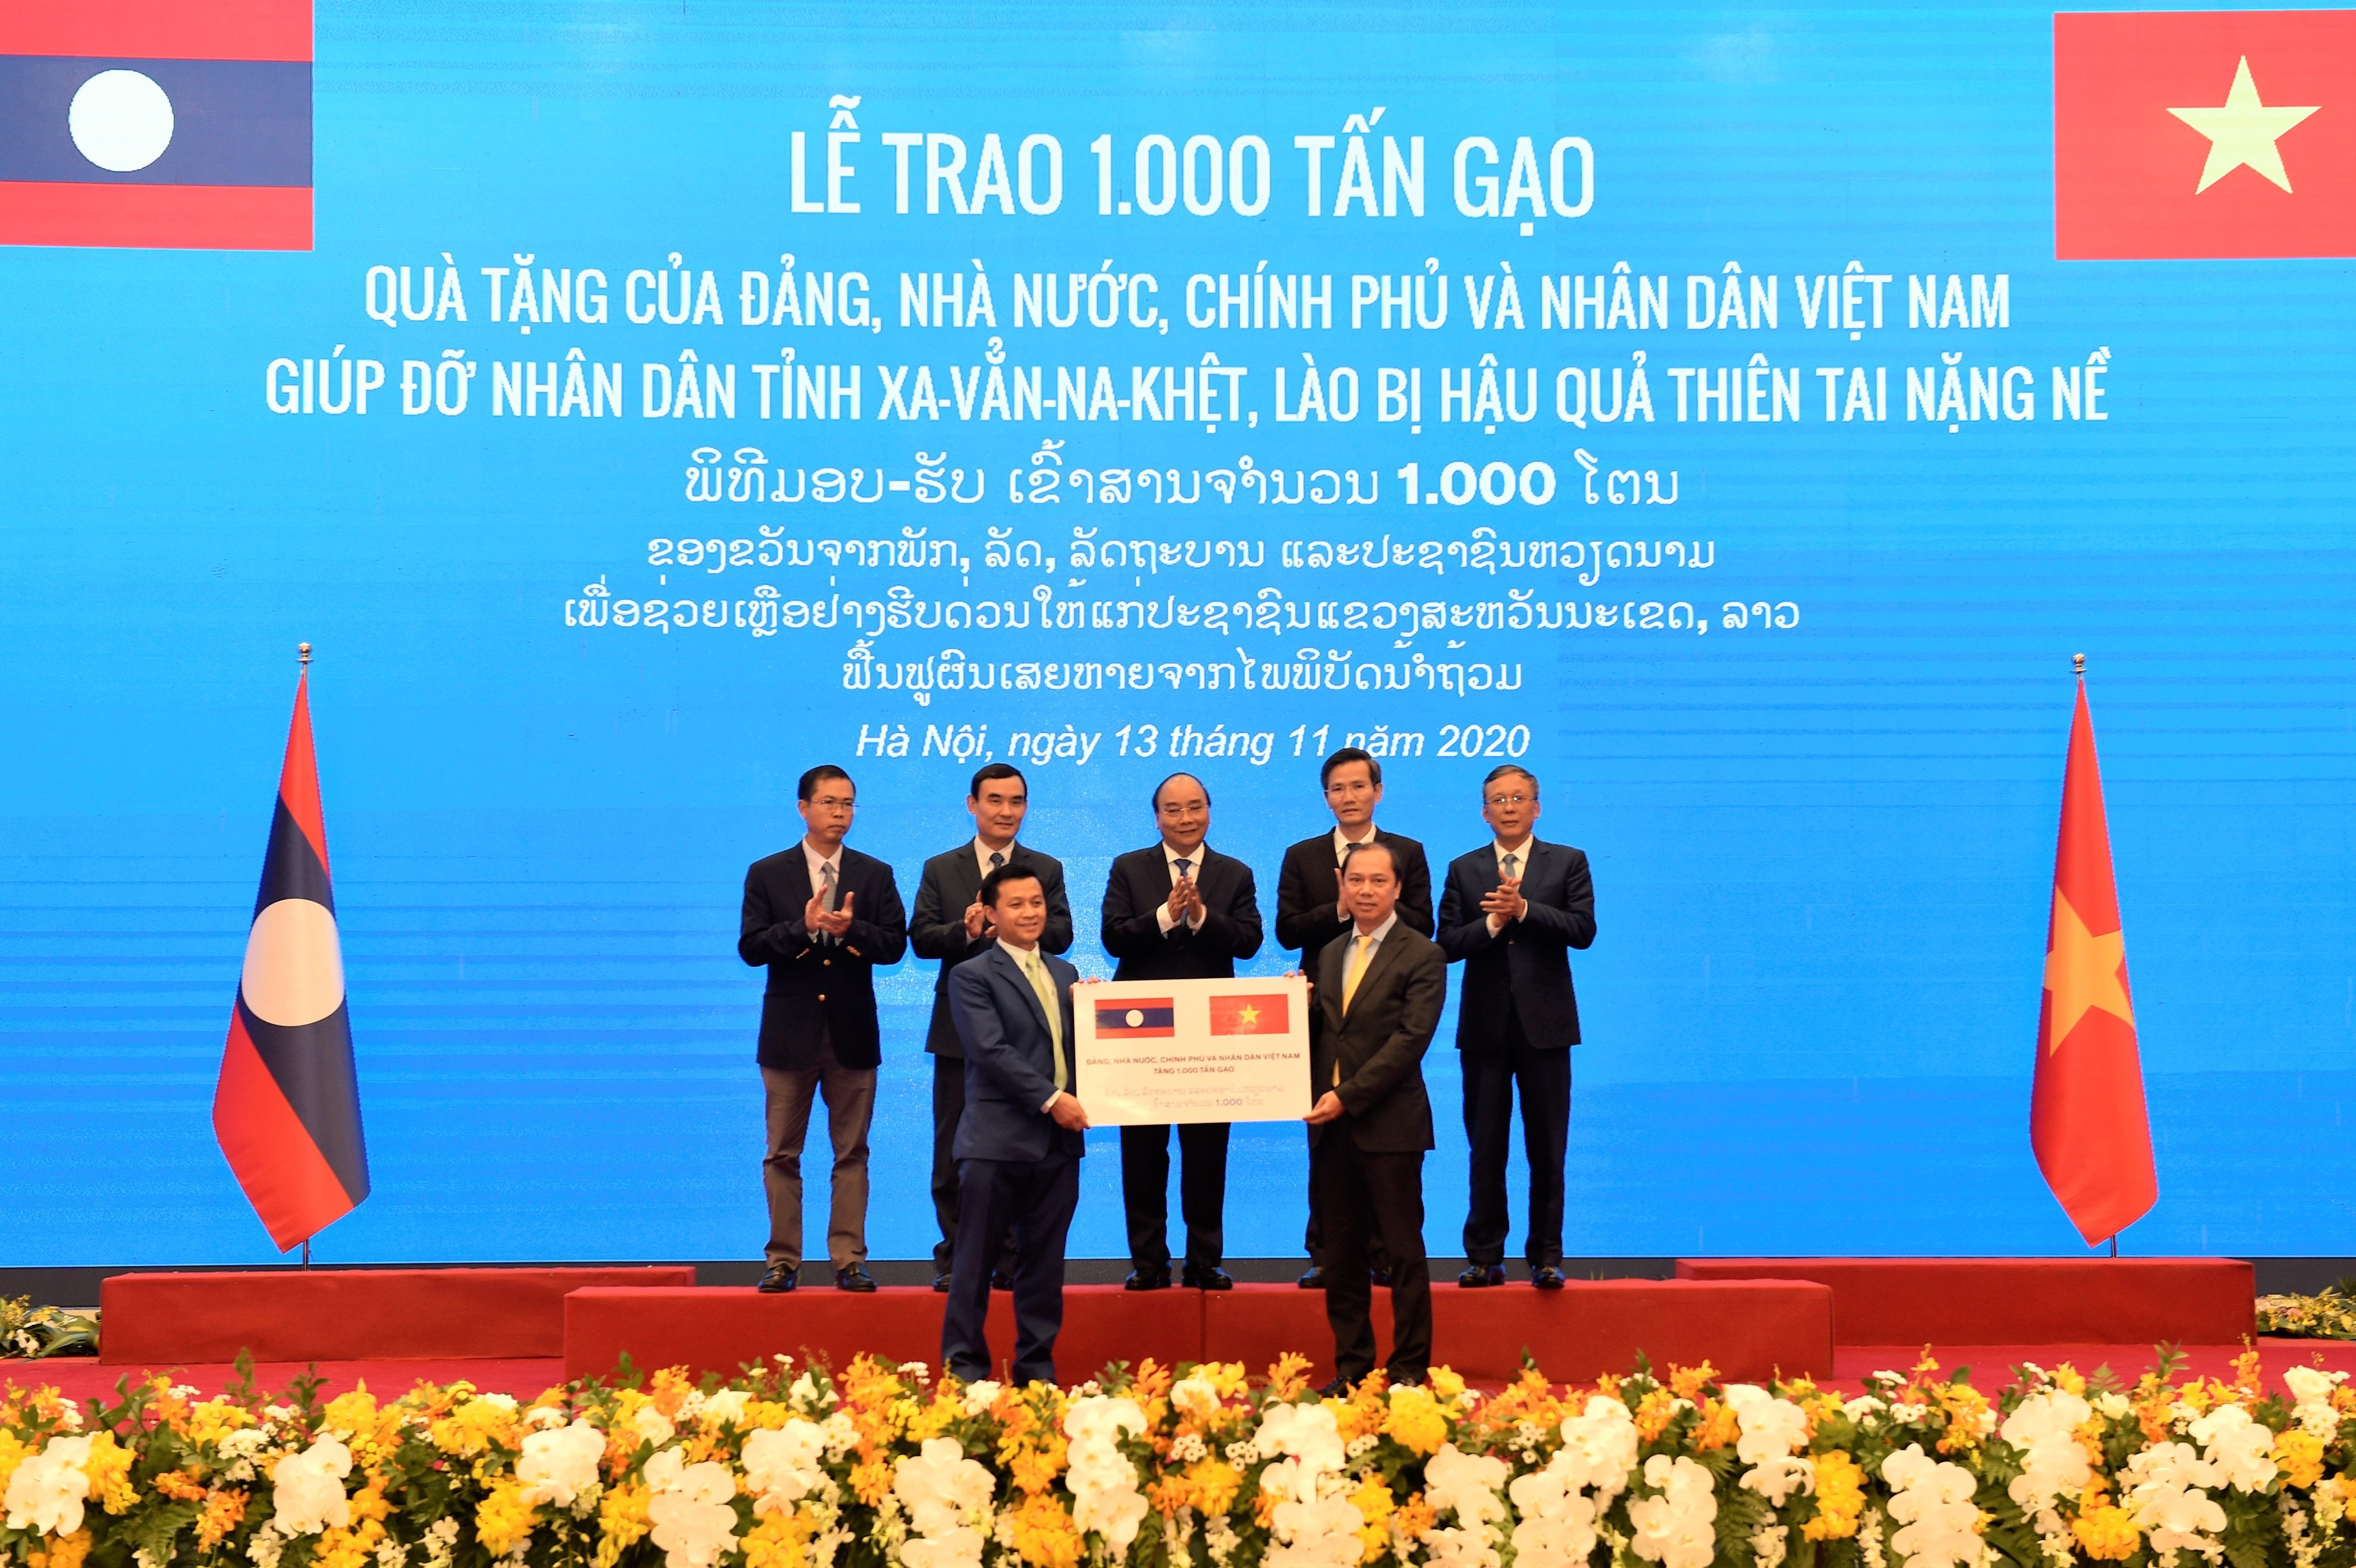 'Hạt gạo cắn đôi, cọng rau bẻ nửa', Việt Nam tặng Lào 1.000 tấn gạo